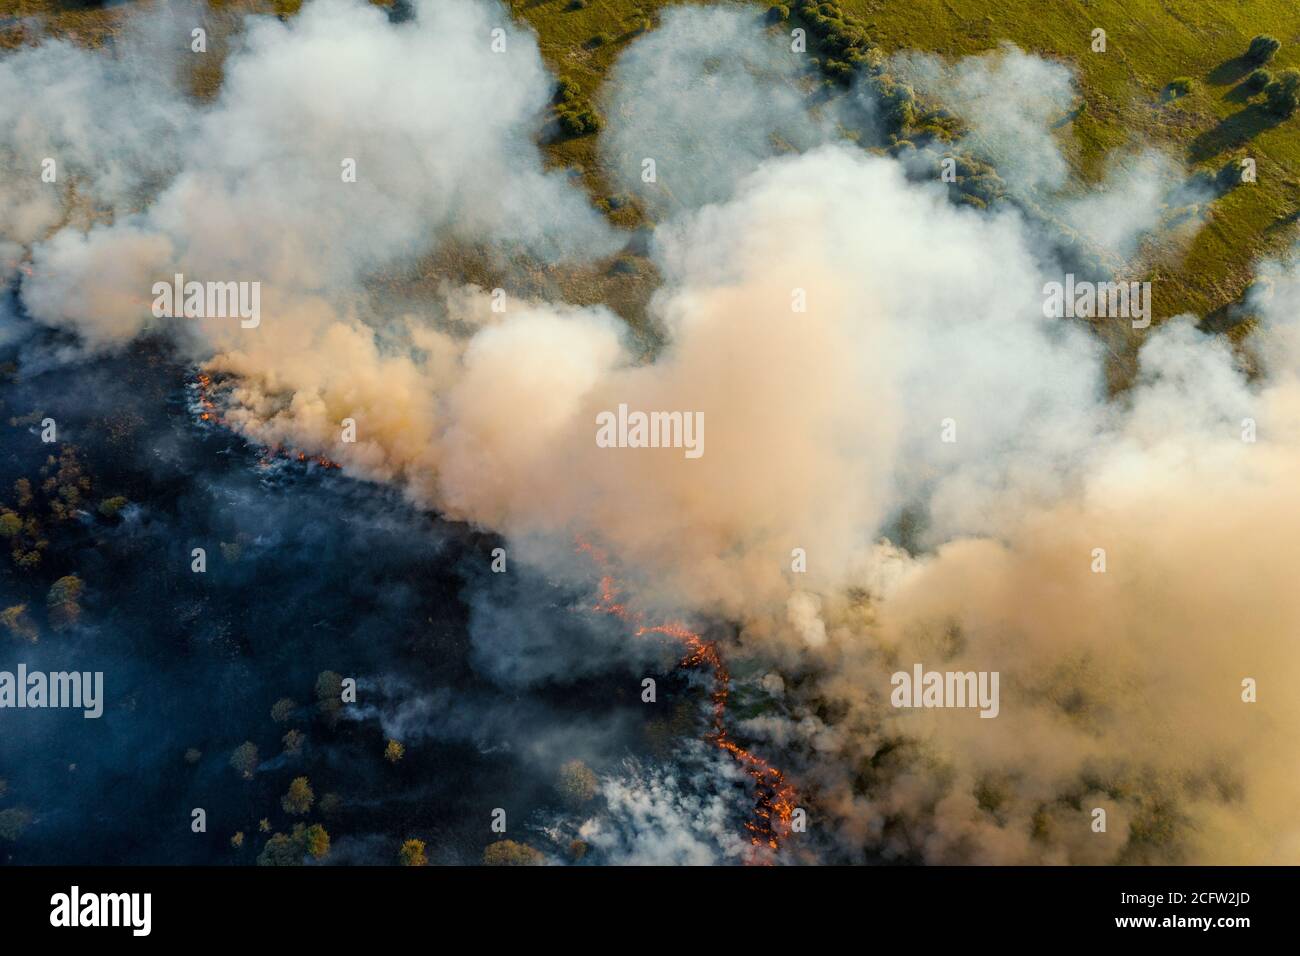 Feu de forêt en saison sèche. Fumée provenant de l'herbe brûlée et des arbres, vue aérienne du dessus. Banque D'Images